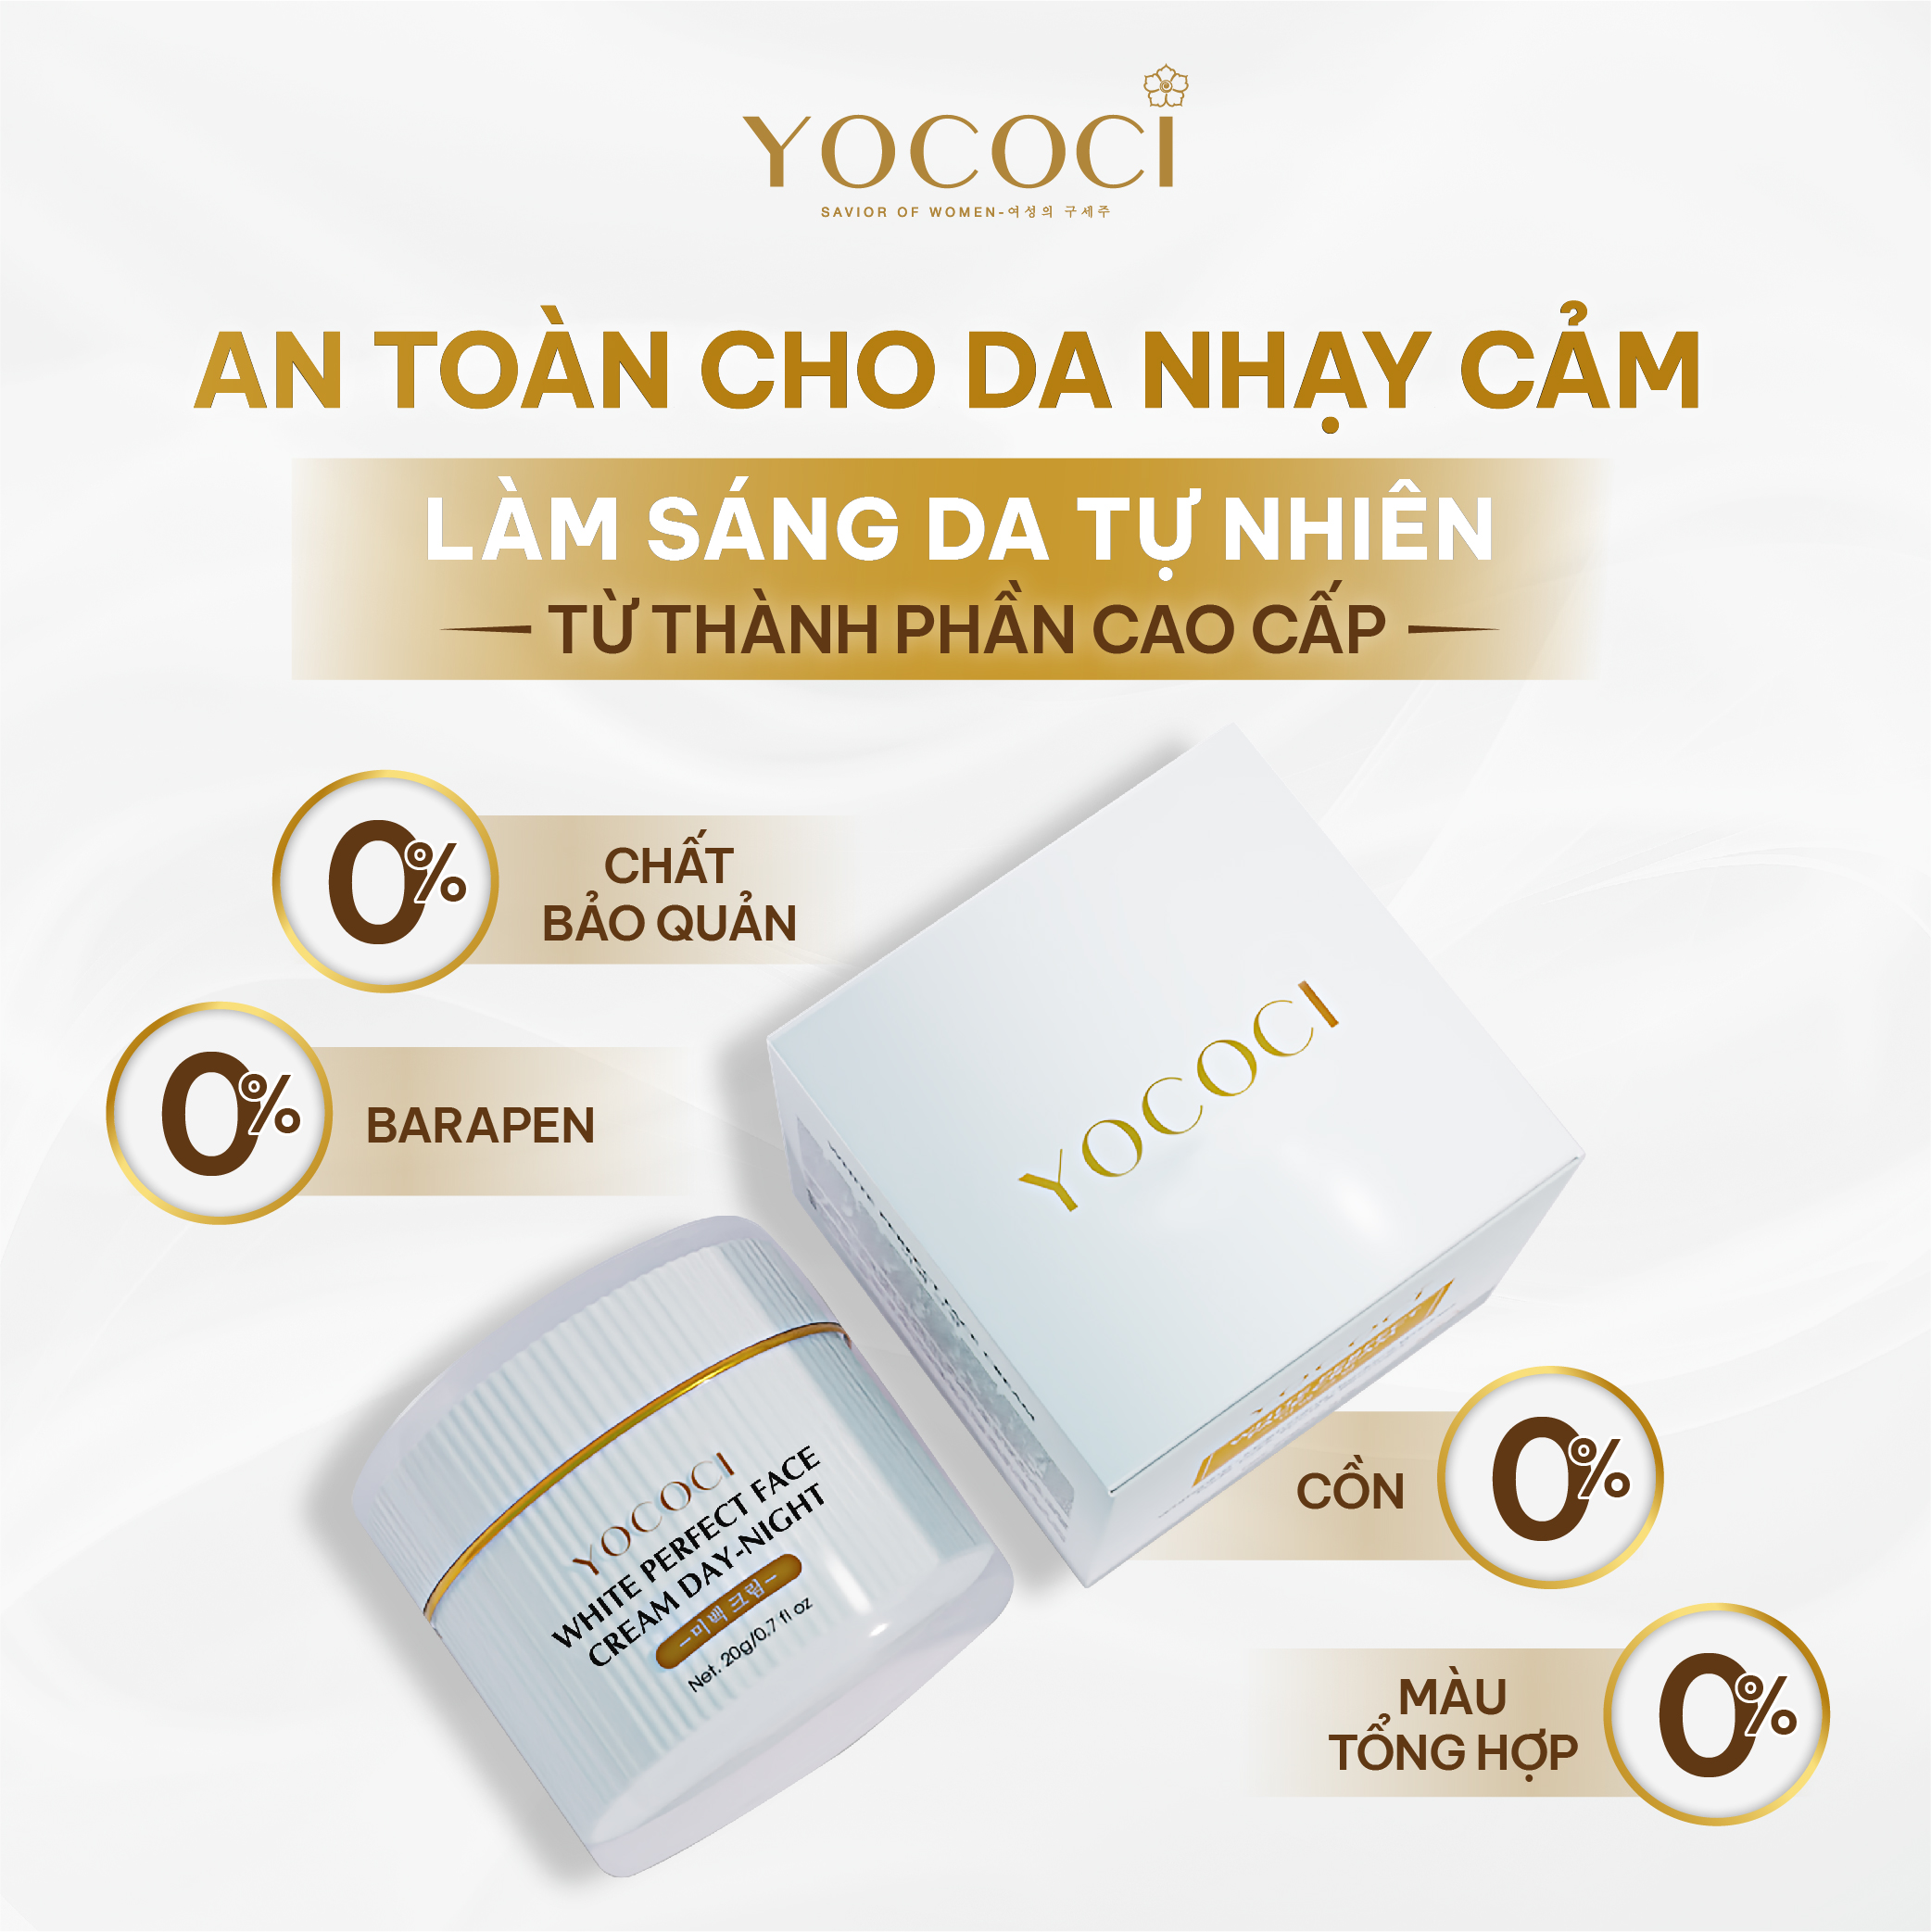 Bộ 4 sản phẩm Yococi (Kem Chống Nắng 50g + Kem Face 20g + Serum 20ml + Tẩy Trang 100g)